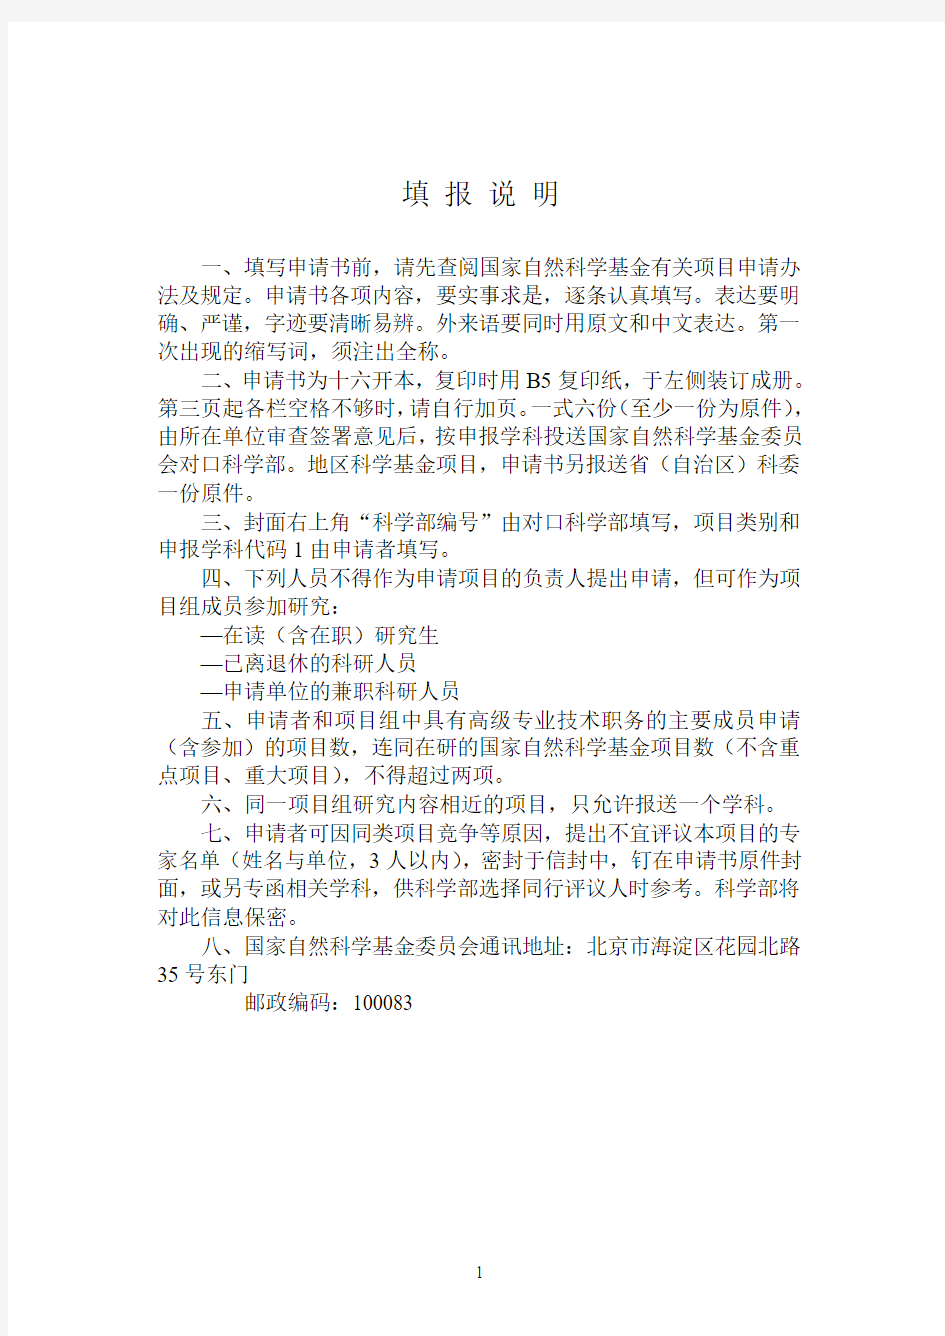 北京市自然科学基金申请书 - 申报项目编号